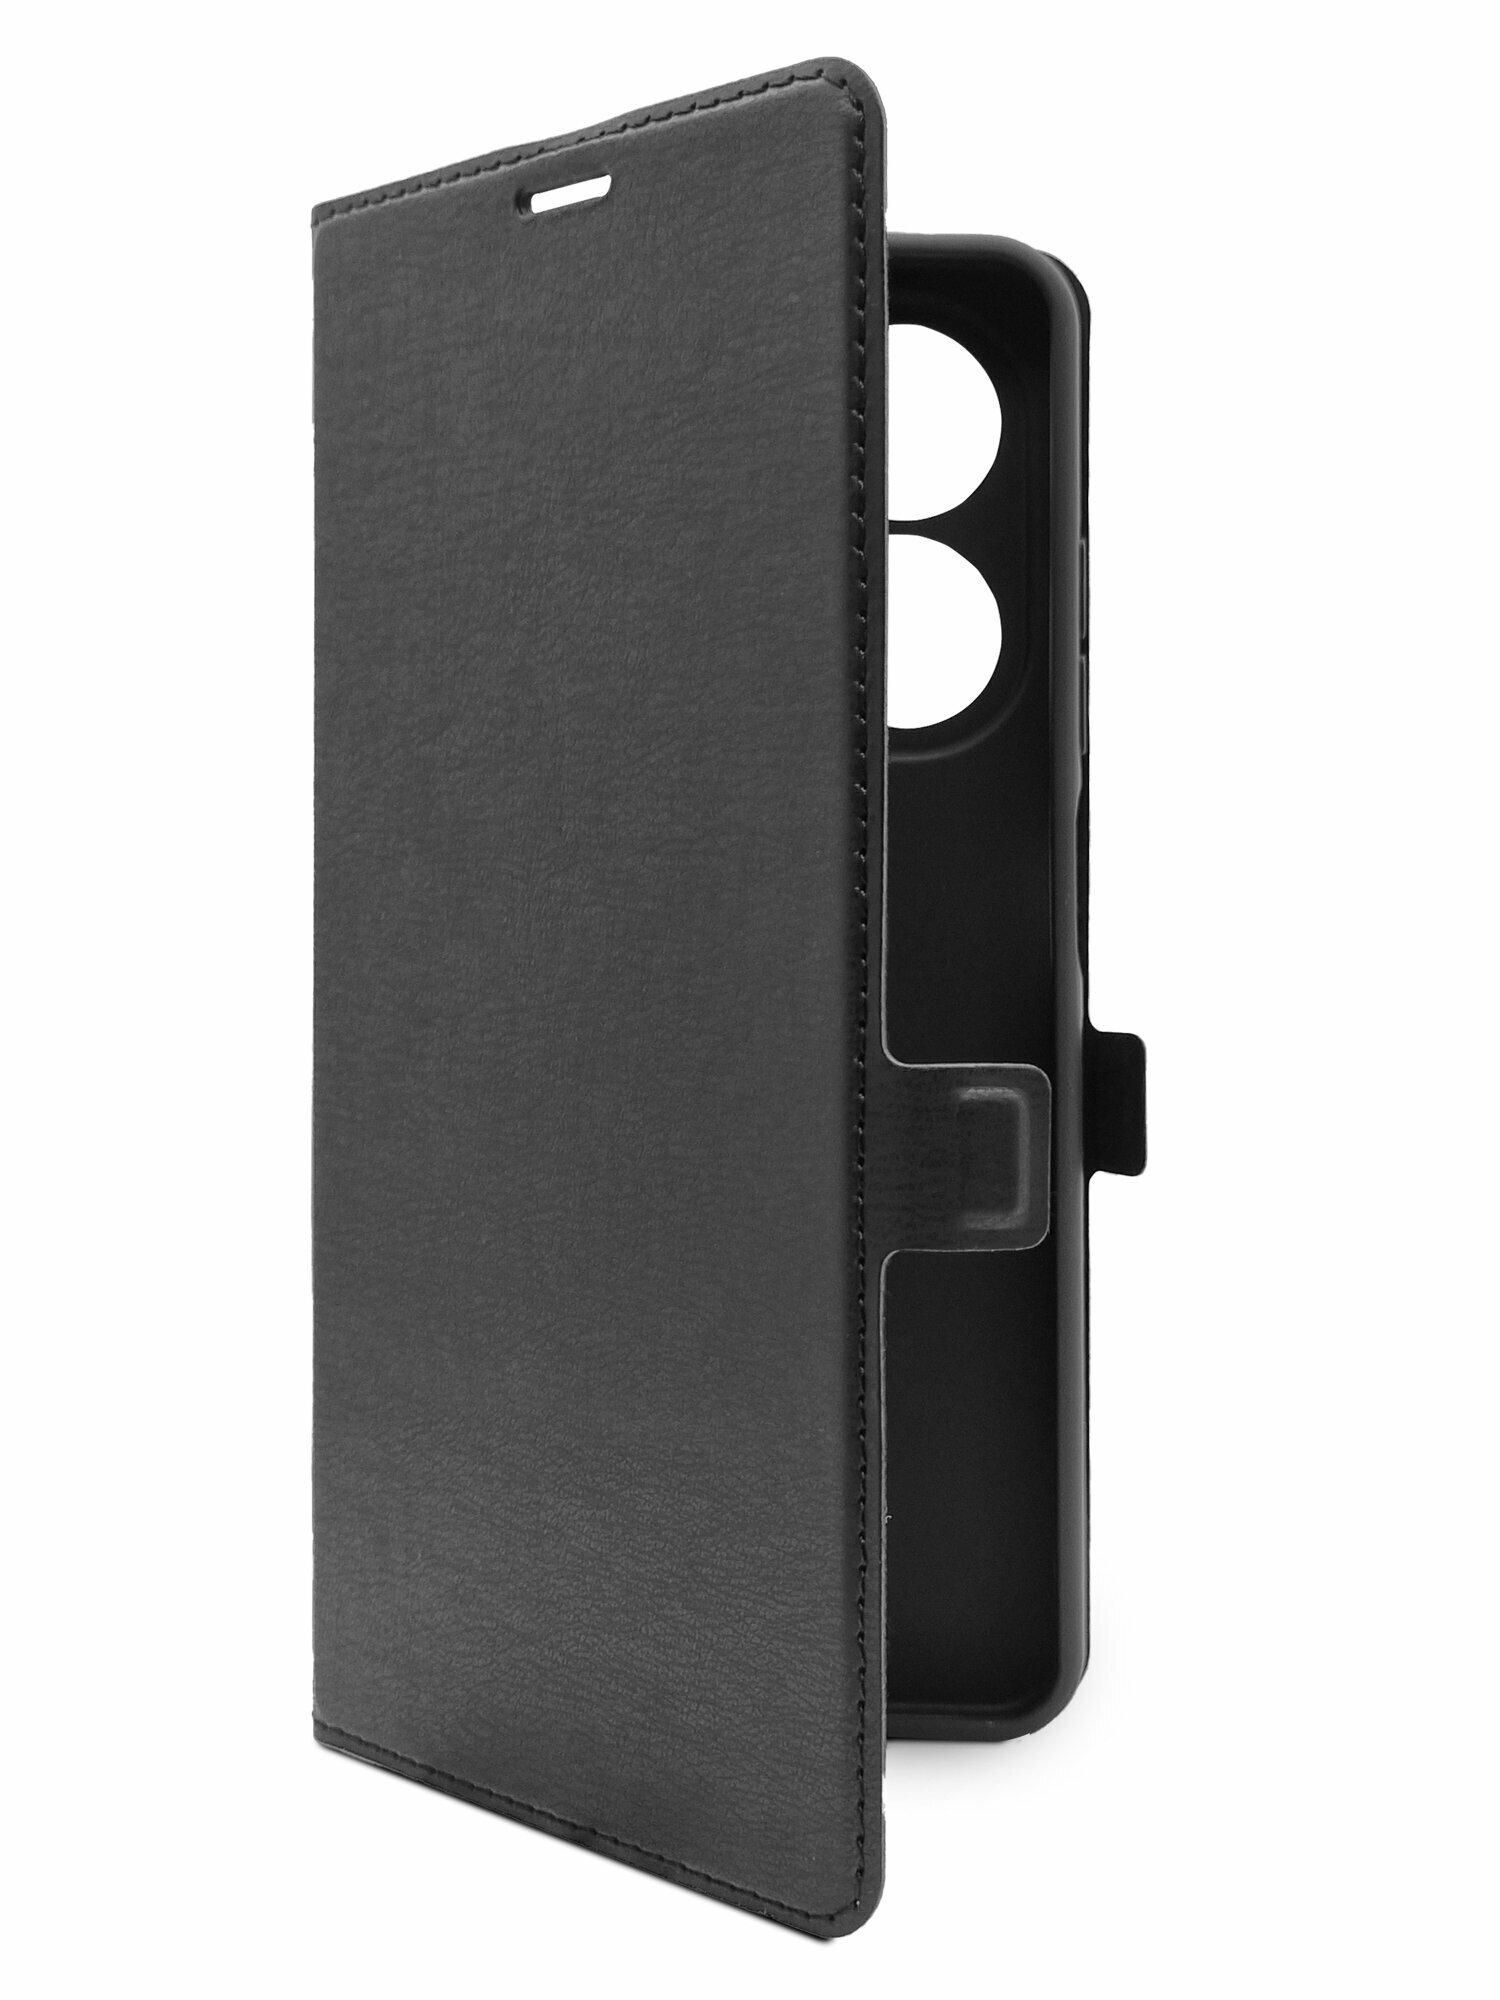 Чехол на Tecno Spark 20C (Техно Спарк 20С) черный книжка эко-кожа с функцией подставки отделением для пластиковых карт и магнитами Book case, Brozo